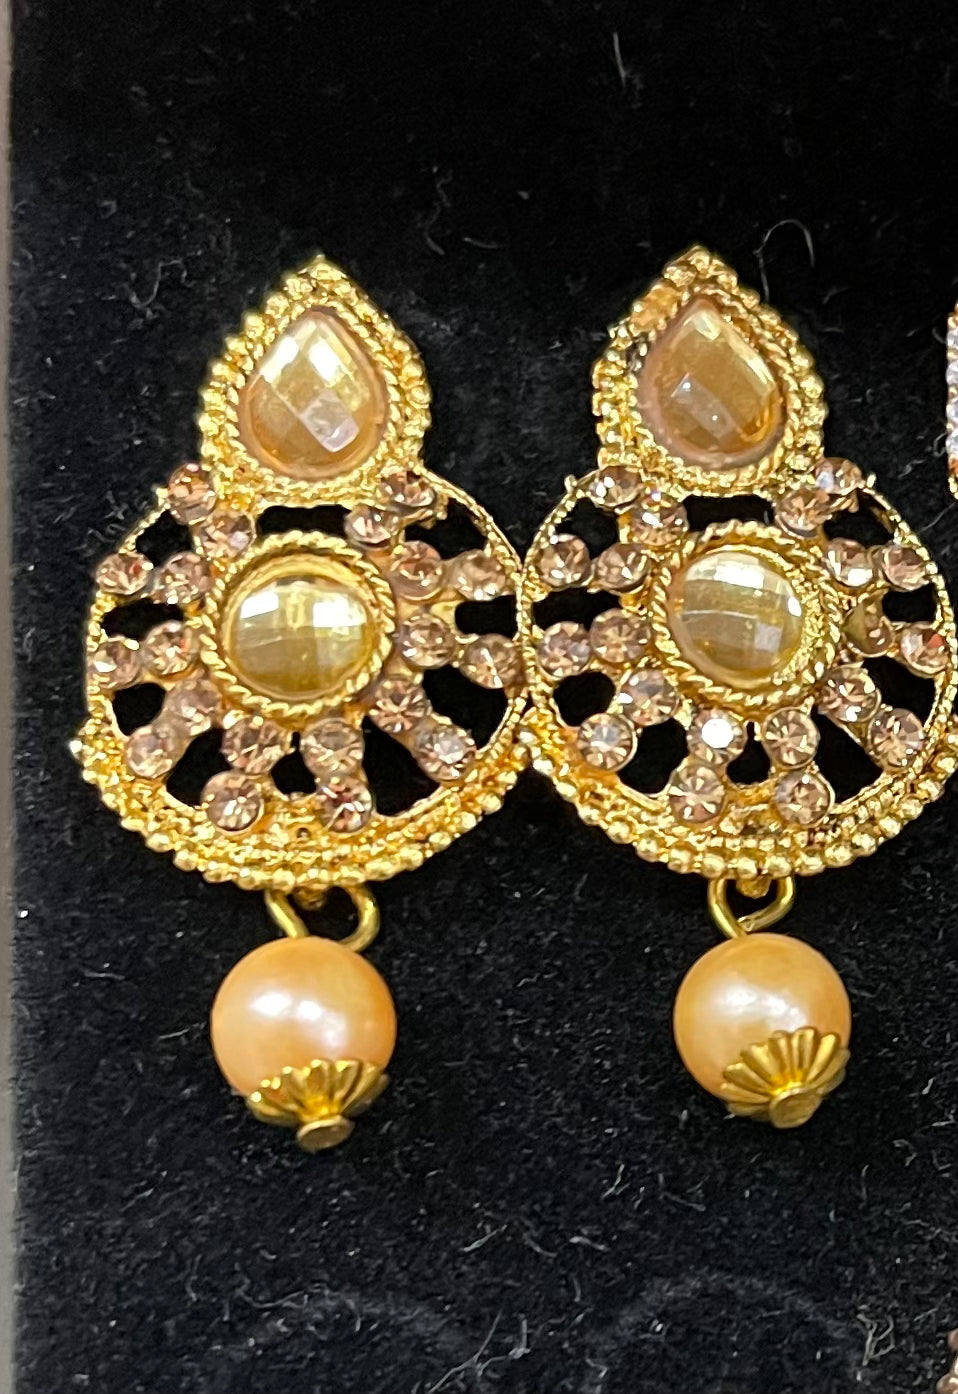 Beautiful designer small earrings